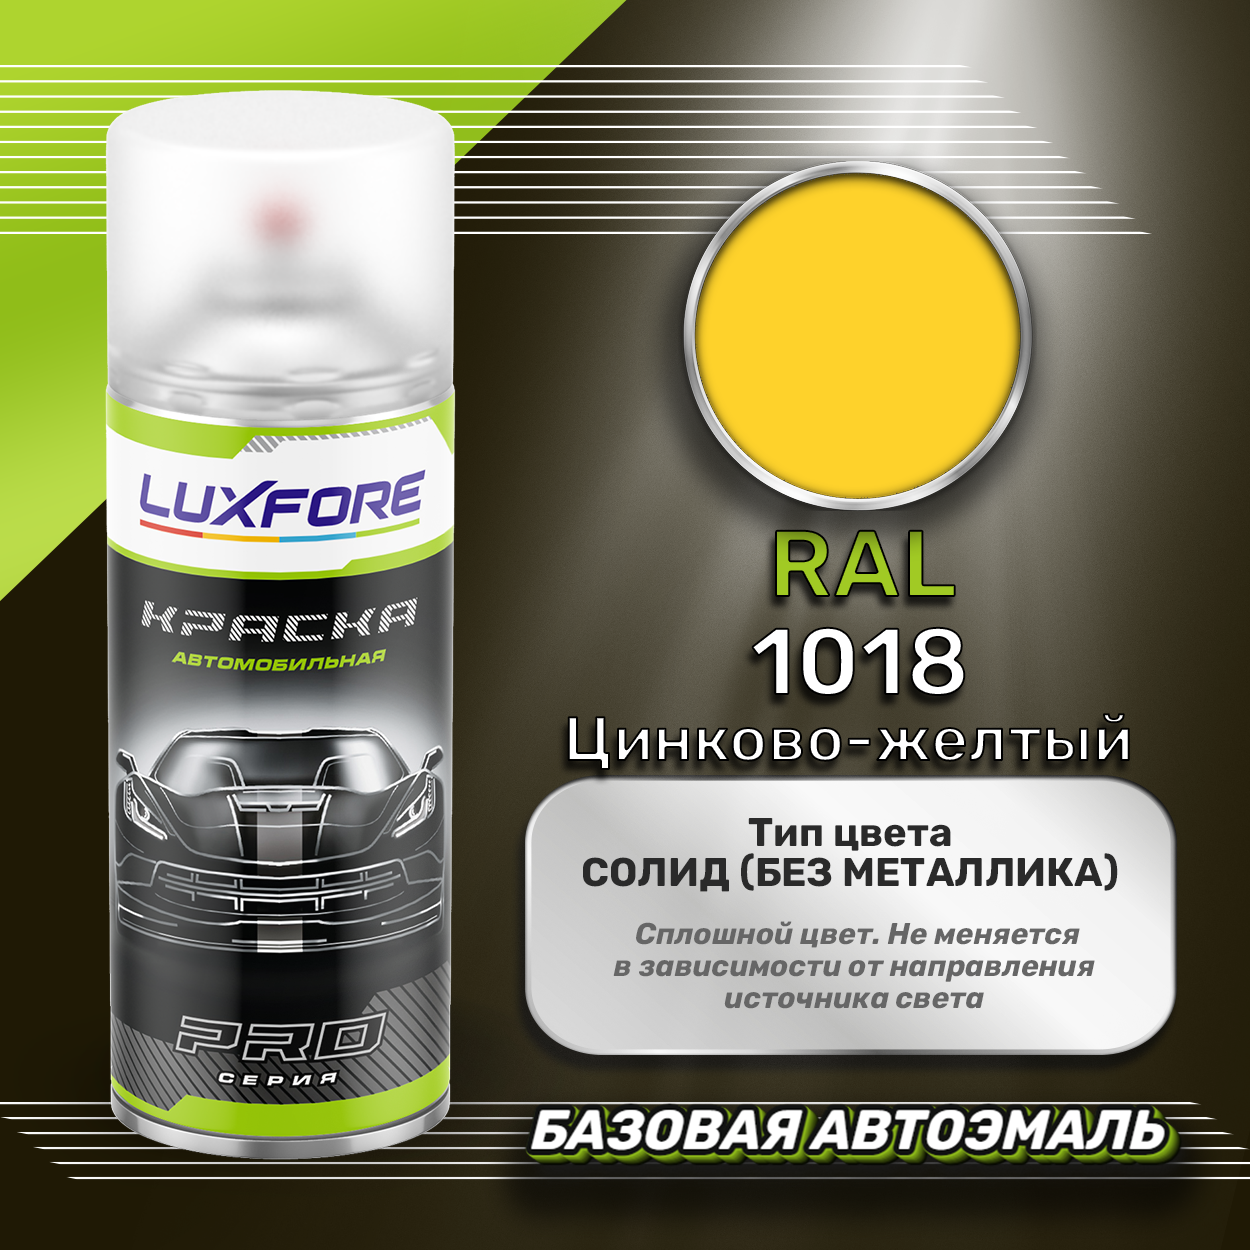 Luxfore аэрозольная краска RAL 1018 Цинково-желтый 400 мл